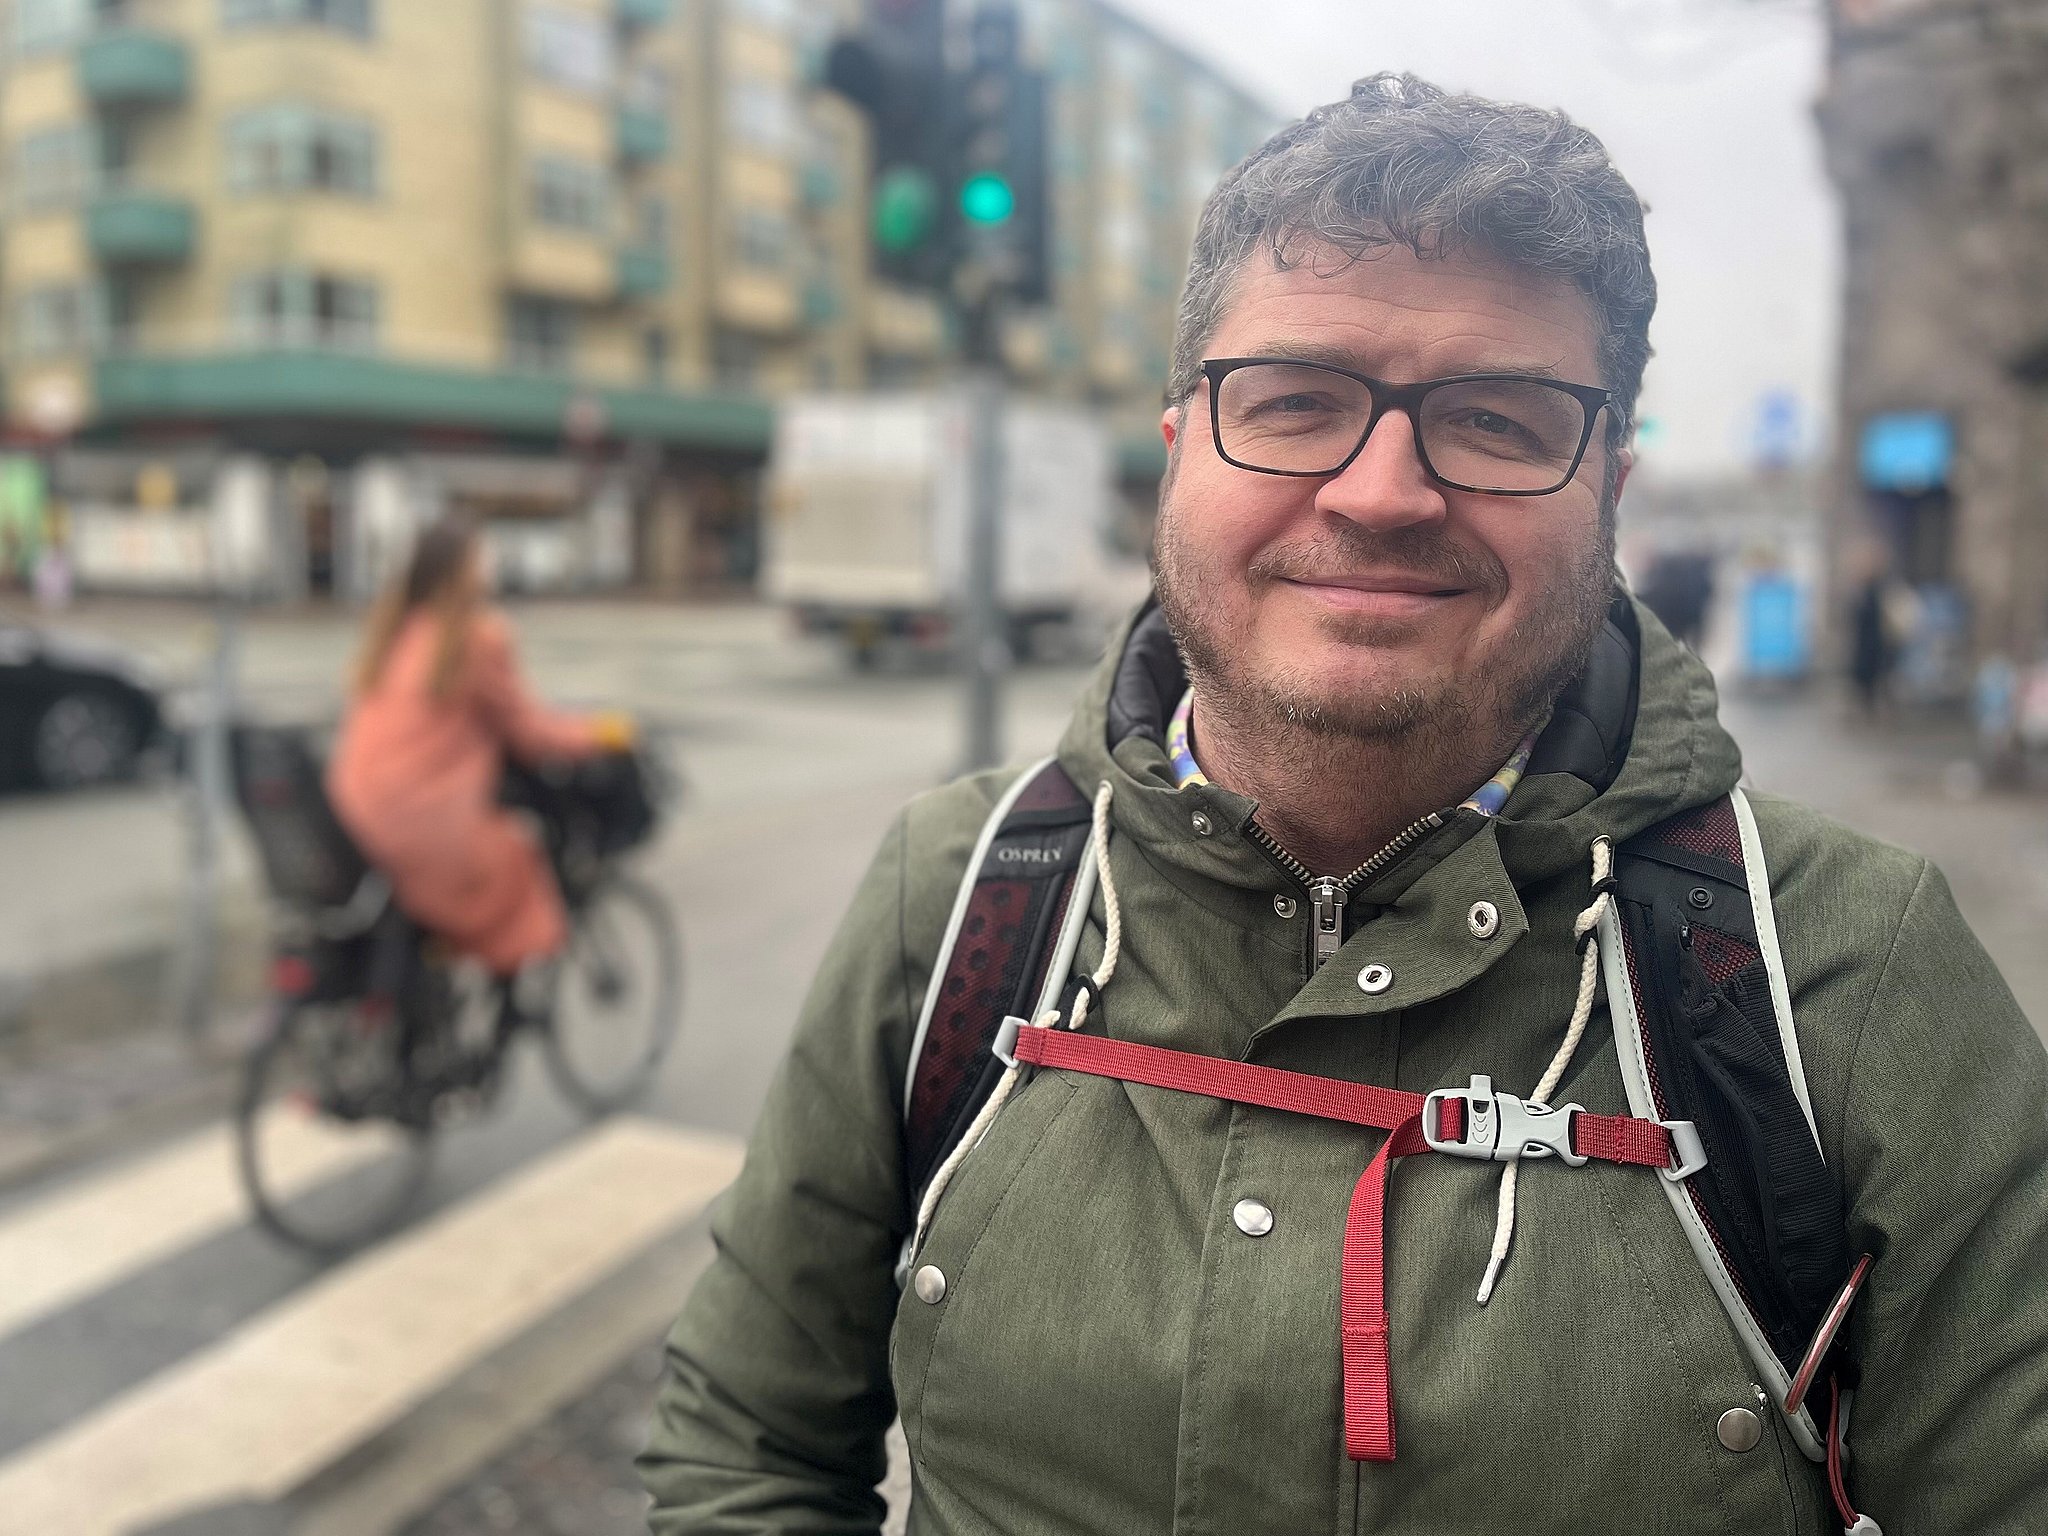 Vægt Ligner Frost Jubel på cykelstien: Nu skal "det værste sted i København" forbedres | TV 2  Kosmopol